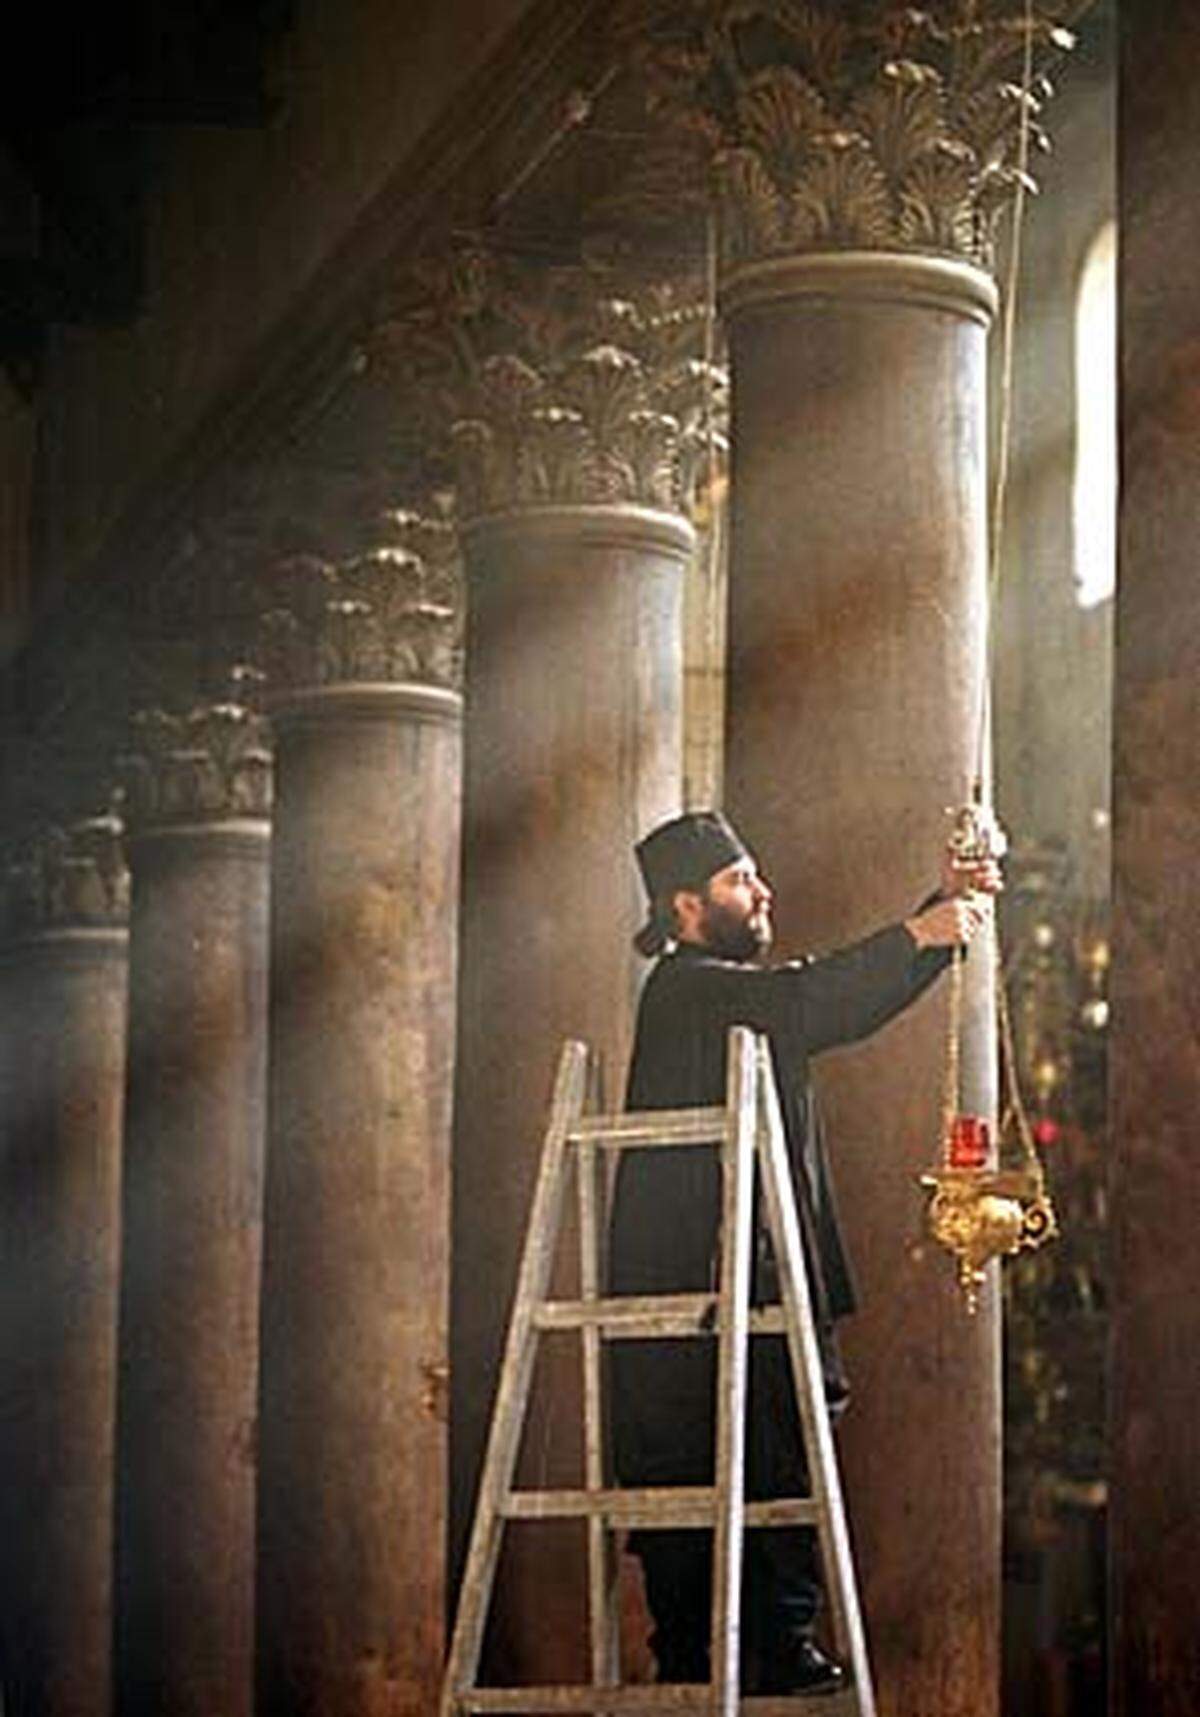 Während die Katholiken die Geburt Christi am 24. und 25. Dezember in Bethlehem feiern, begehen die Armenier Weihnachten am 5. Jänner und die Orthodoxen am 6. Jänner.